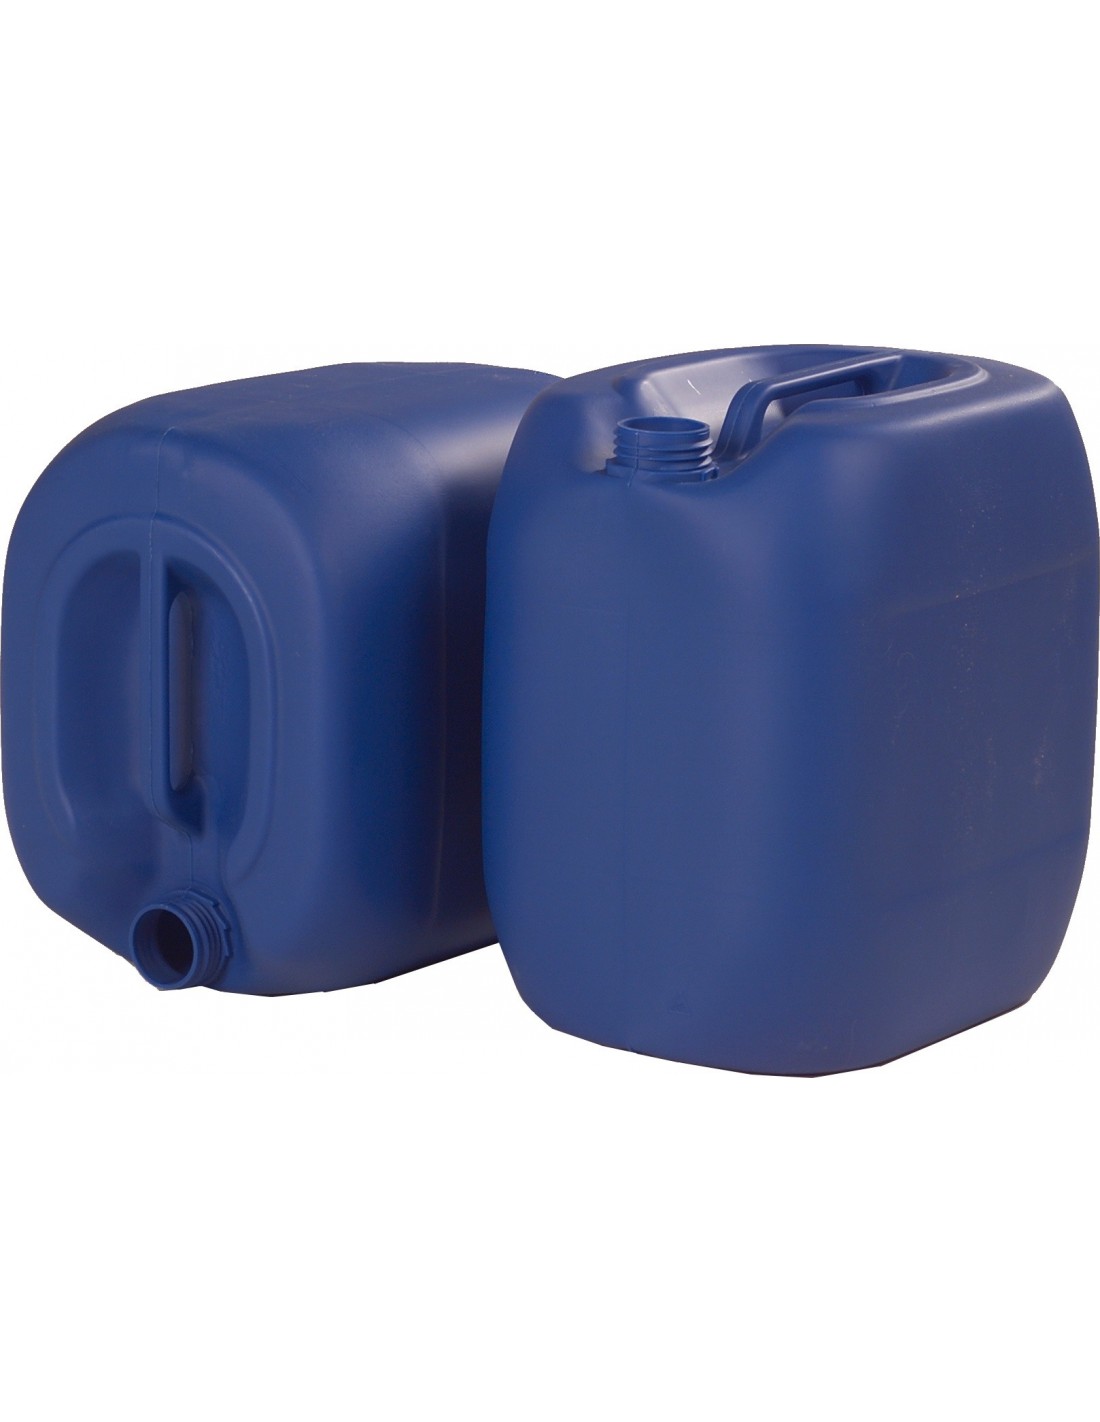 1 Stück 30 Liter Kanister blau Camping Plastekanister Wasserkanister NEUWARE. 